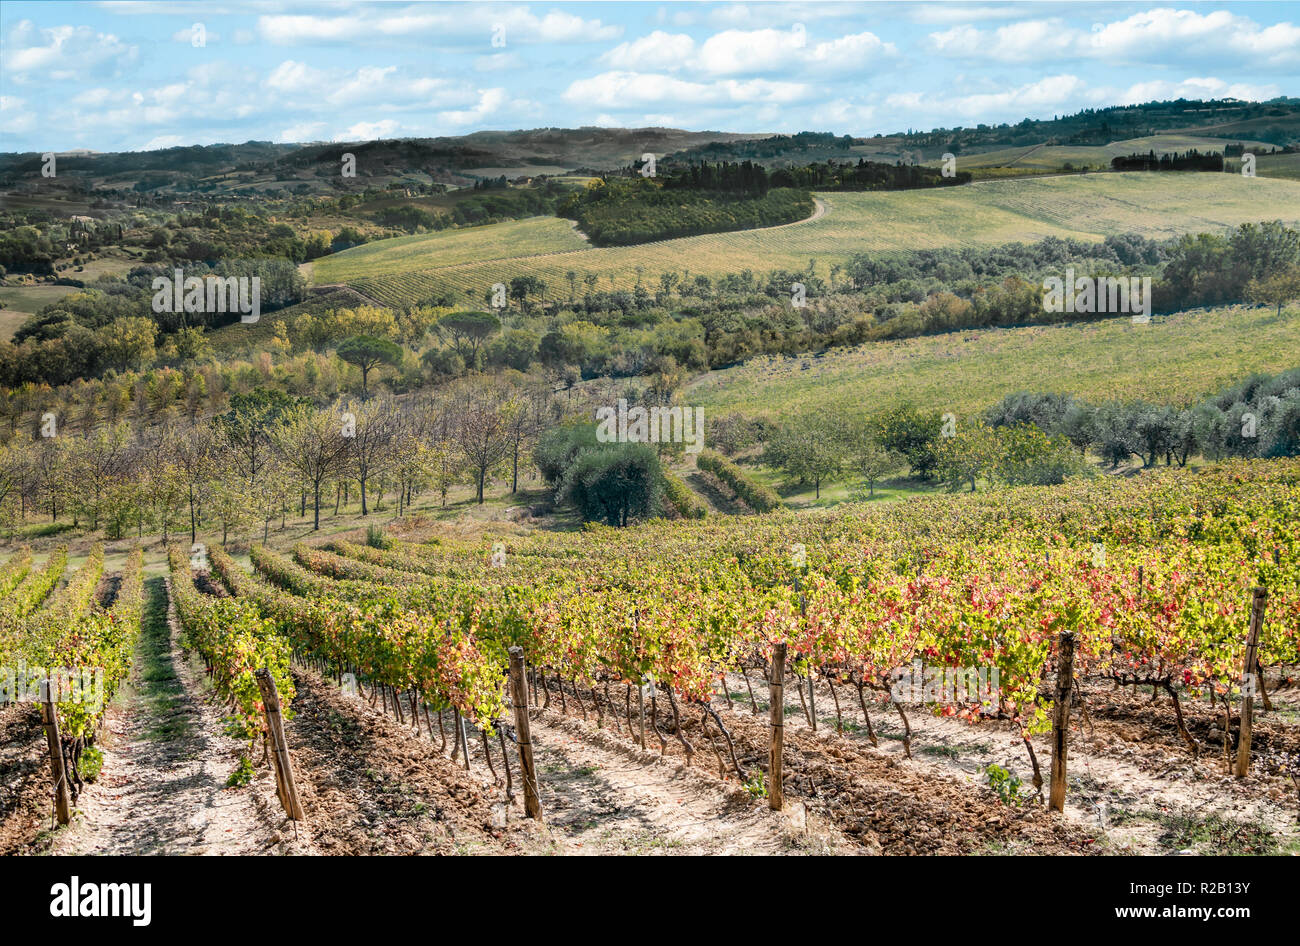 Toscana en octubre: viñedos y olivares mostrar colores de otoño en la ladera de una colina al sur de Florencia, Italia. Foto de stock